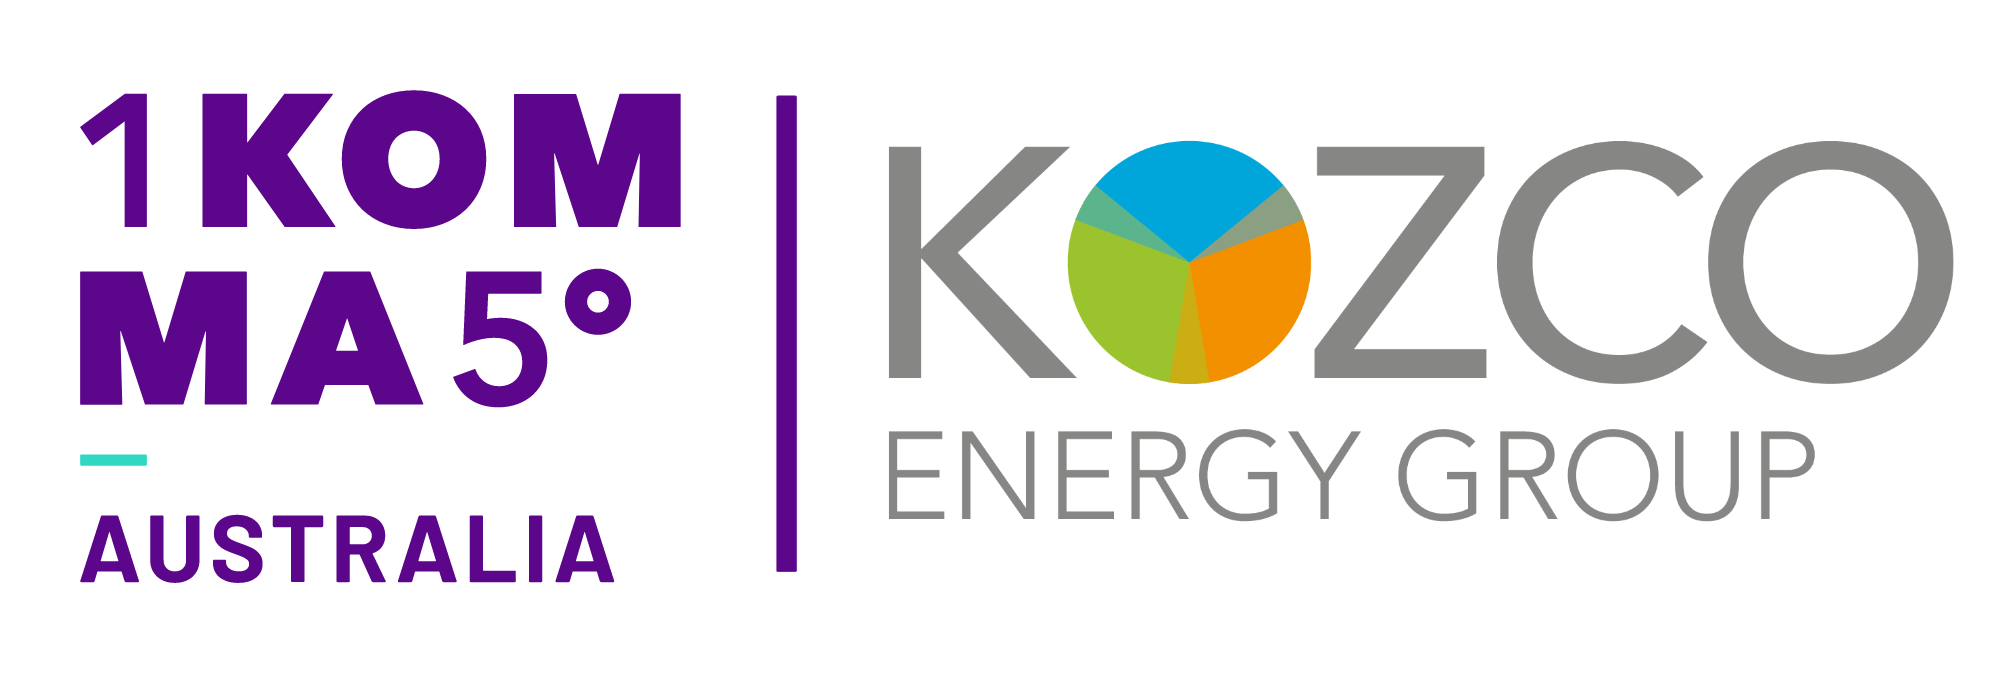 Kozco Energy Group Logo